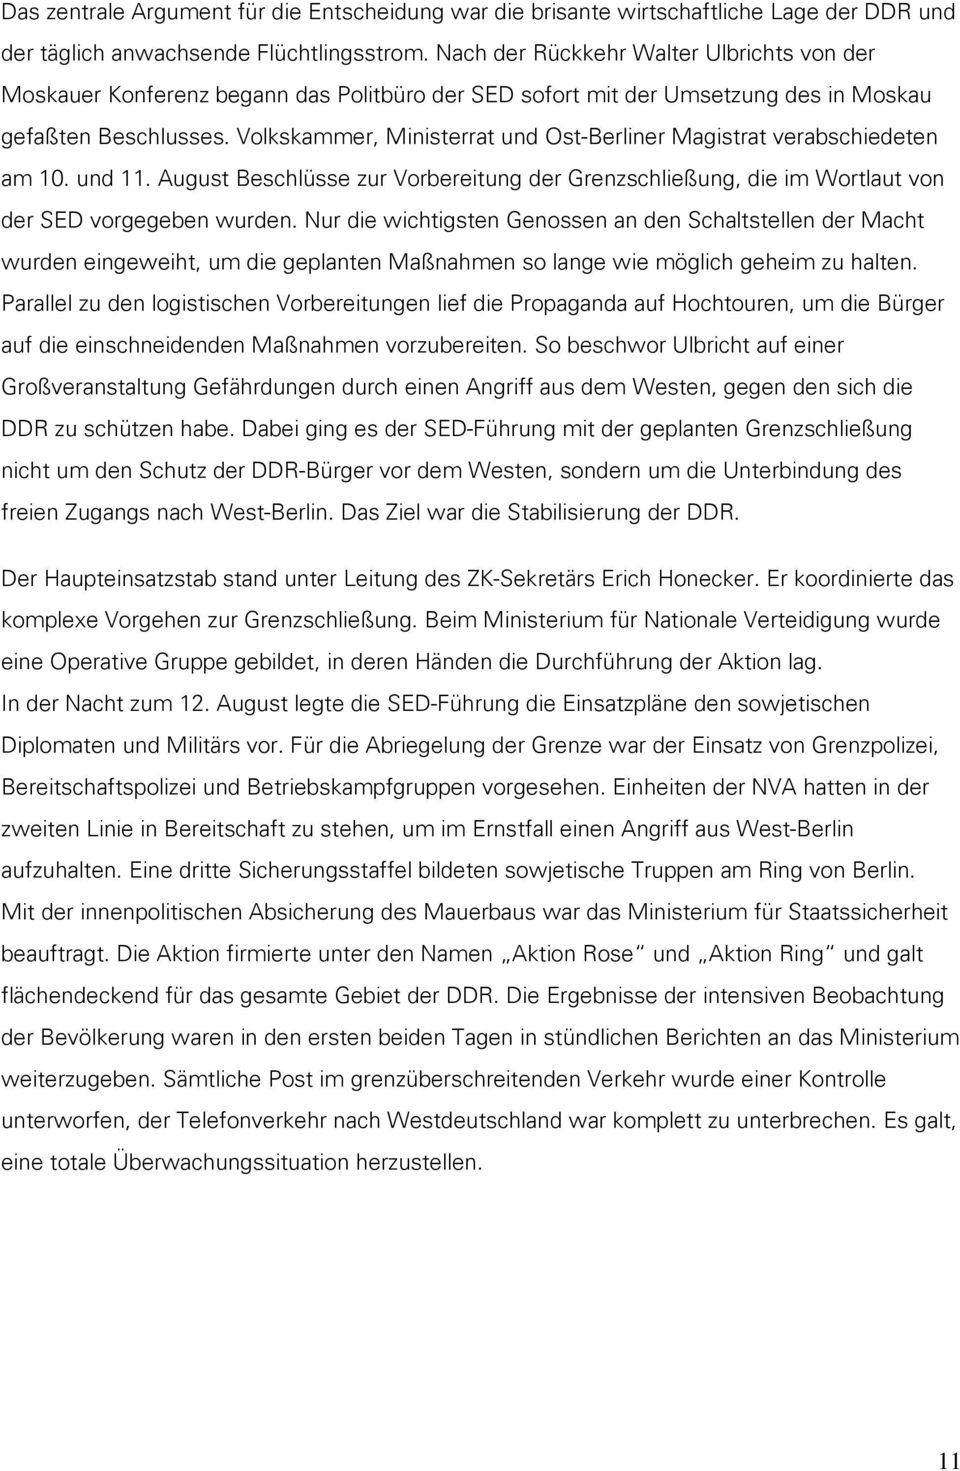 Volkskammer, Ministerrat und Ost-Berliner Magistrat verabschiedeten am 10. und 11. August Beschlüsse zur Vorbereitung der Grenzschließung, die im Wortlaut von der SED vorgegeben wurden.